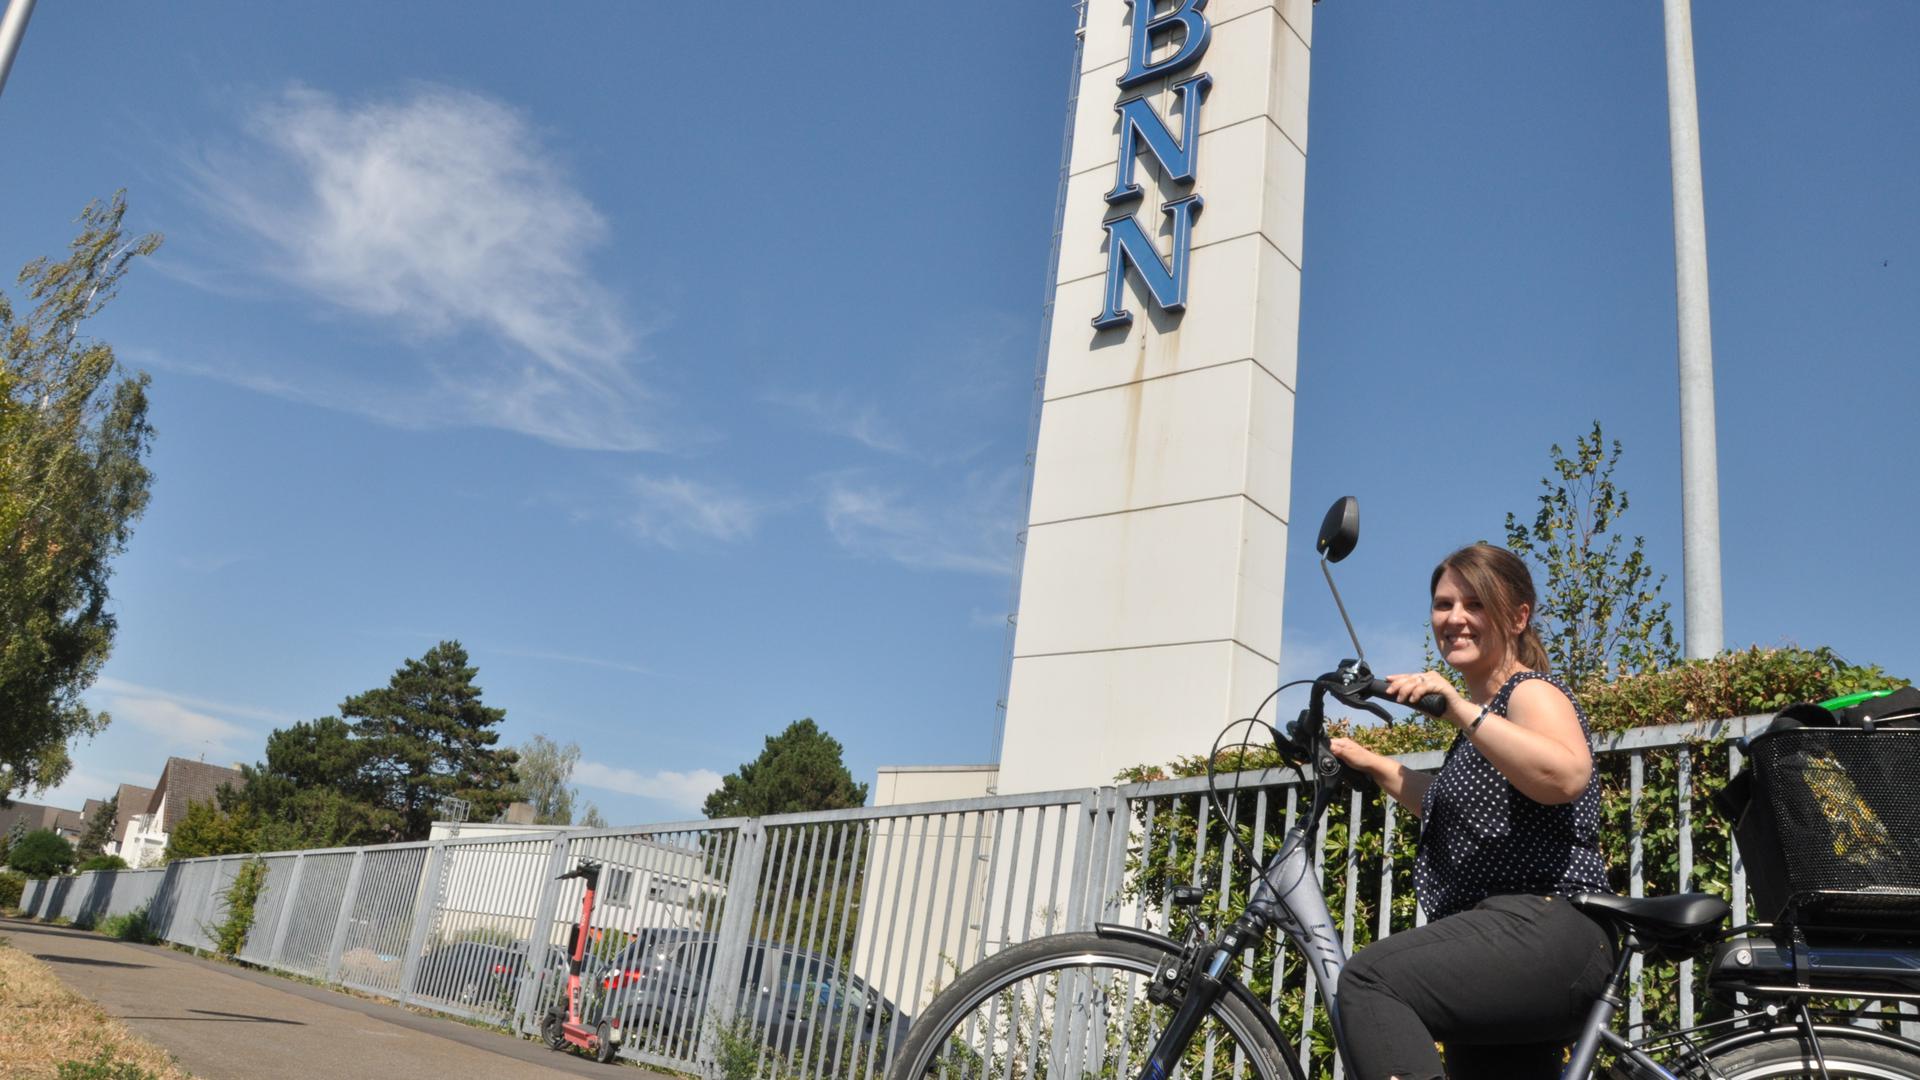 Mit dem E-Bike ist Christel Manzey noch nie zur Arbeit gefahren.  Hier ist sie auf dem Fahrrad vor den BNN in Neureut zu sehen.